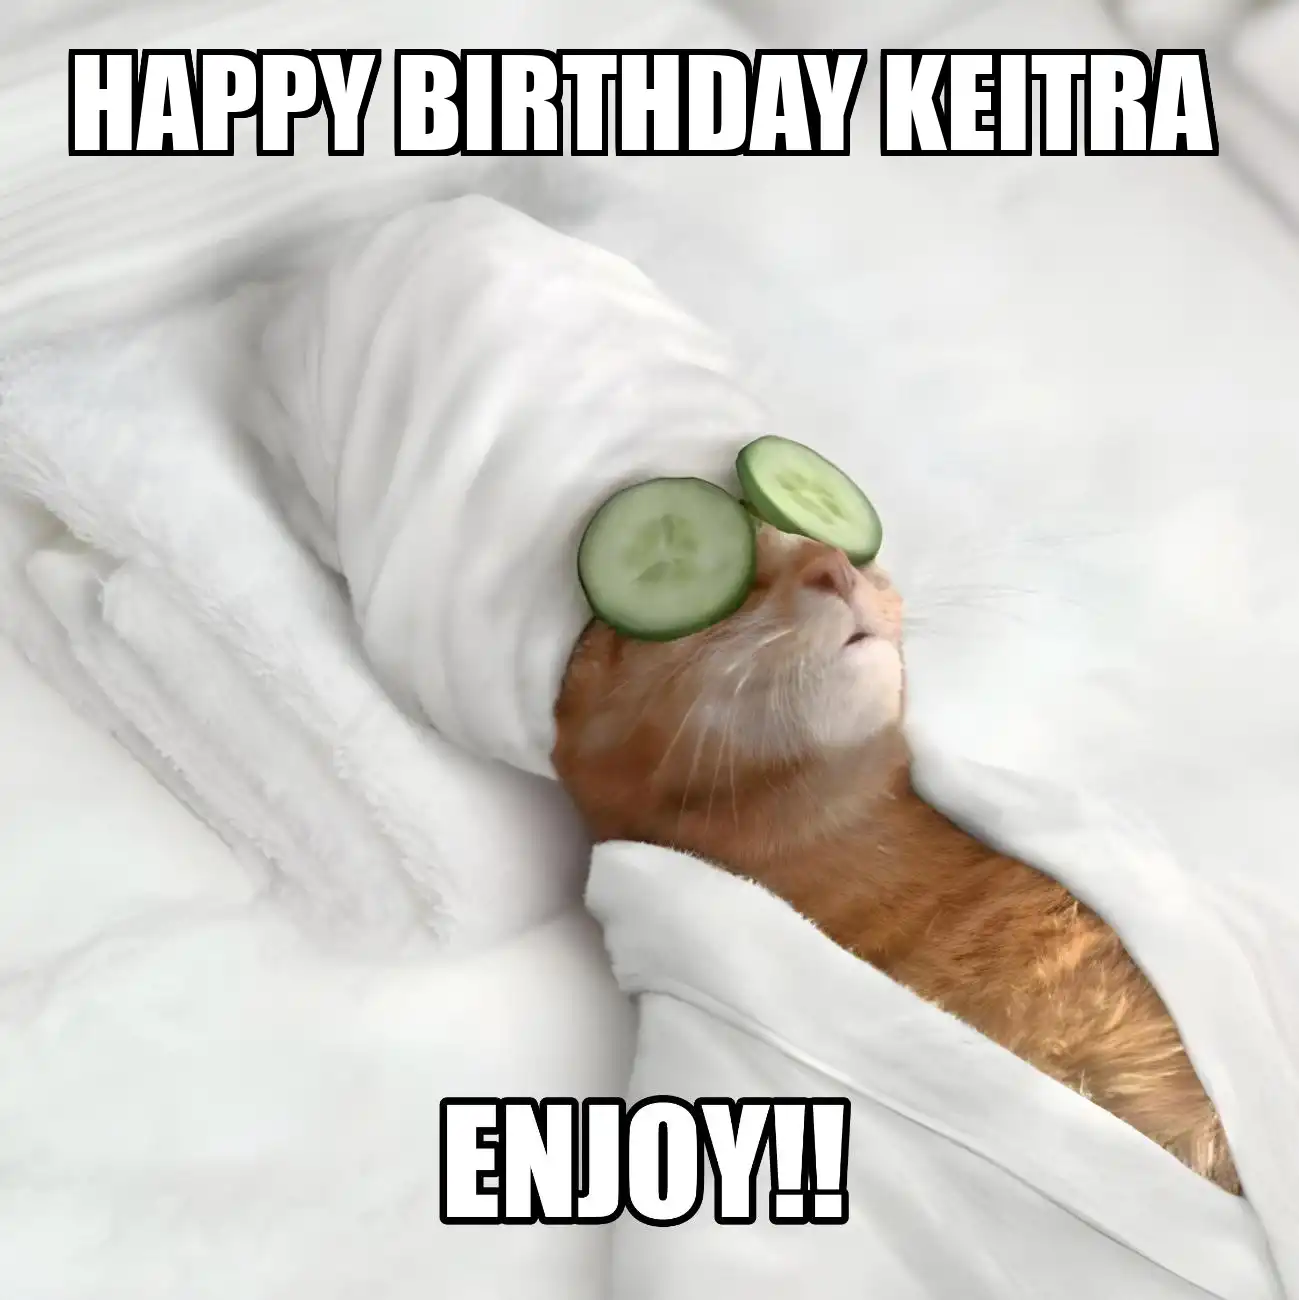 Happy Birthday Keitra Enjoy Cat Meme